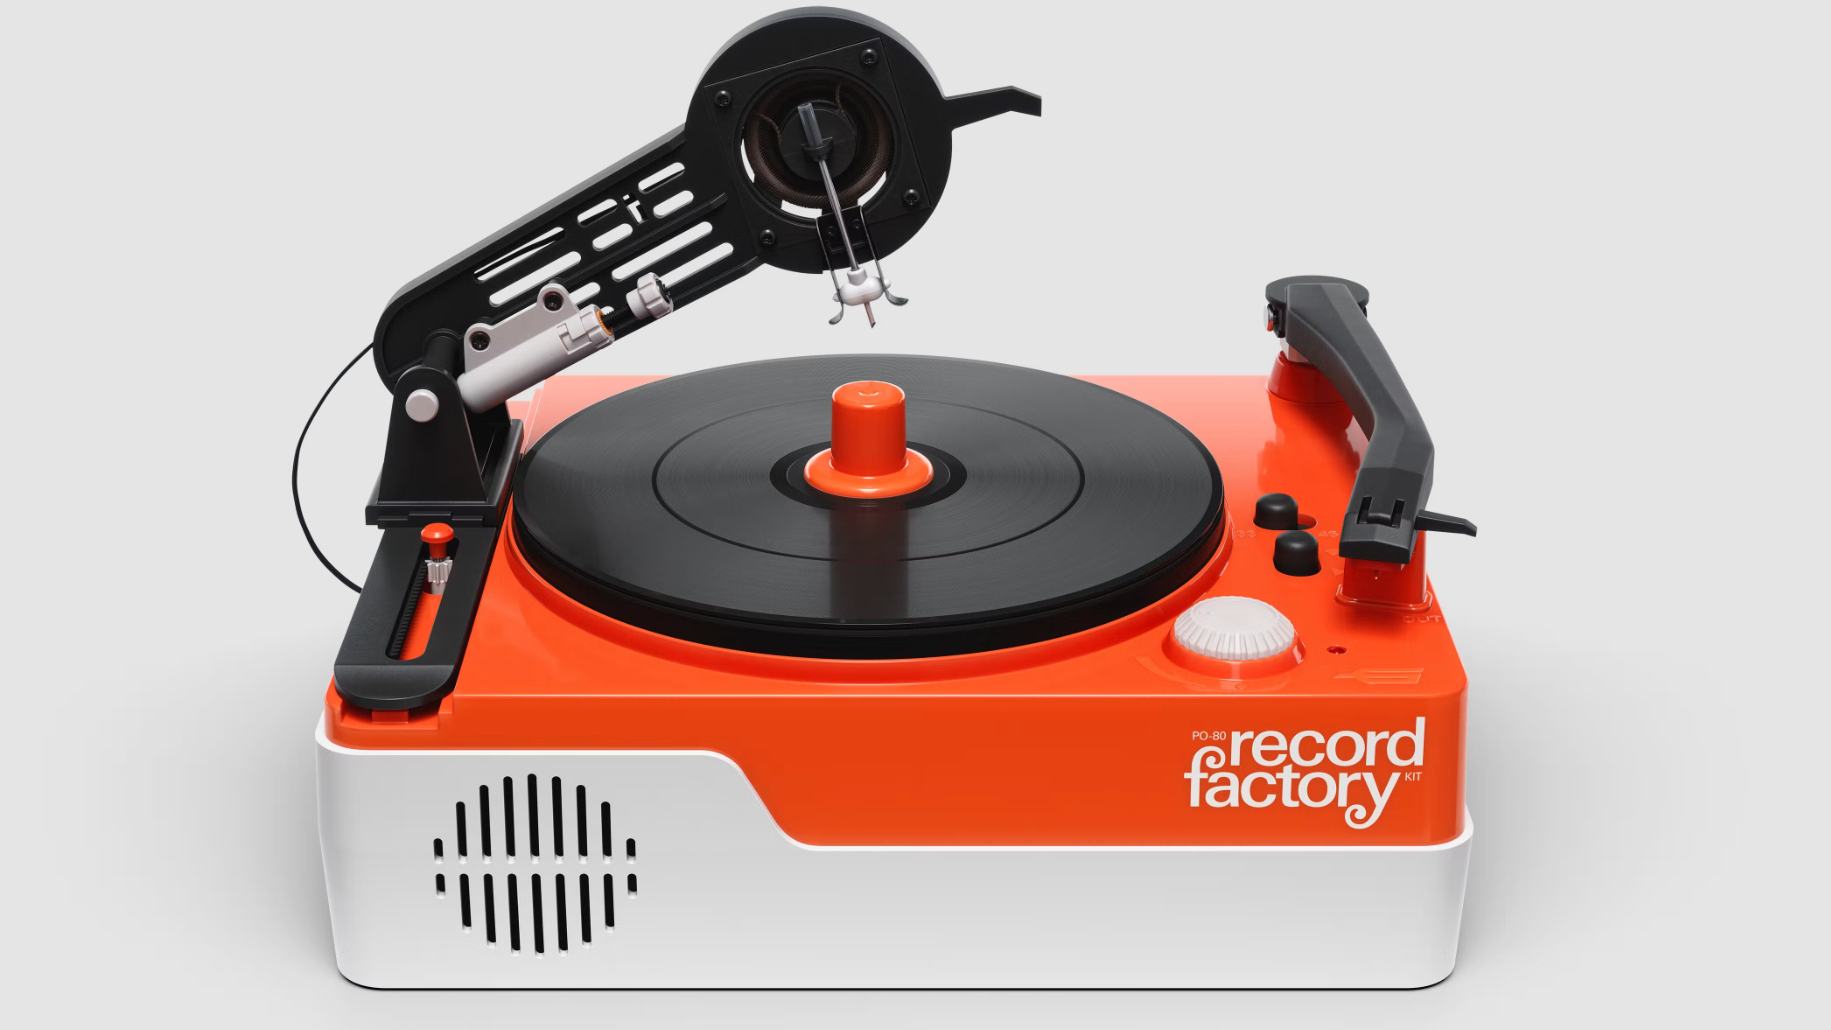 Режьте и проигрывайте пластинки в стиле ретро с Record Factory от Teenage Engineering.